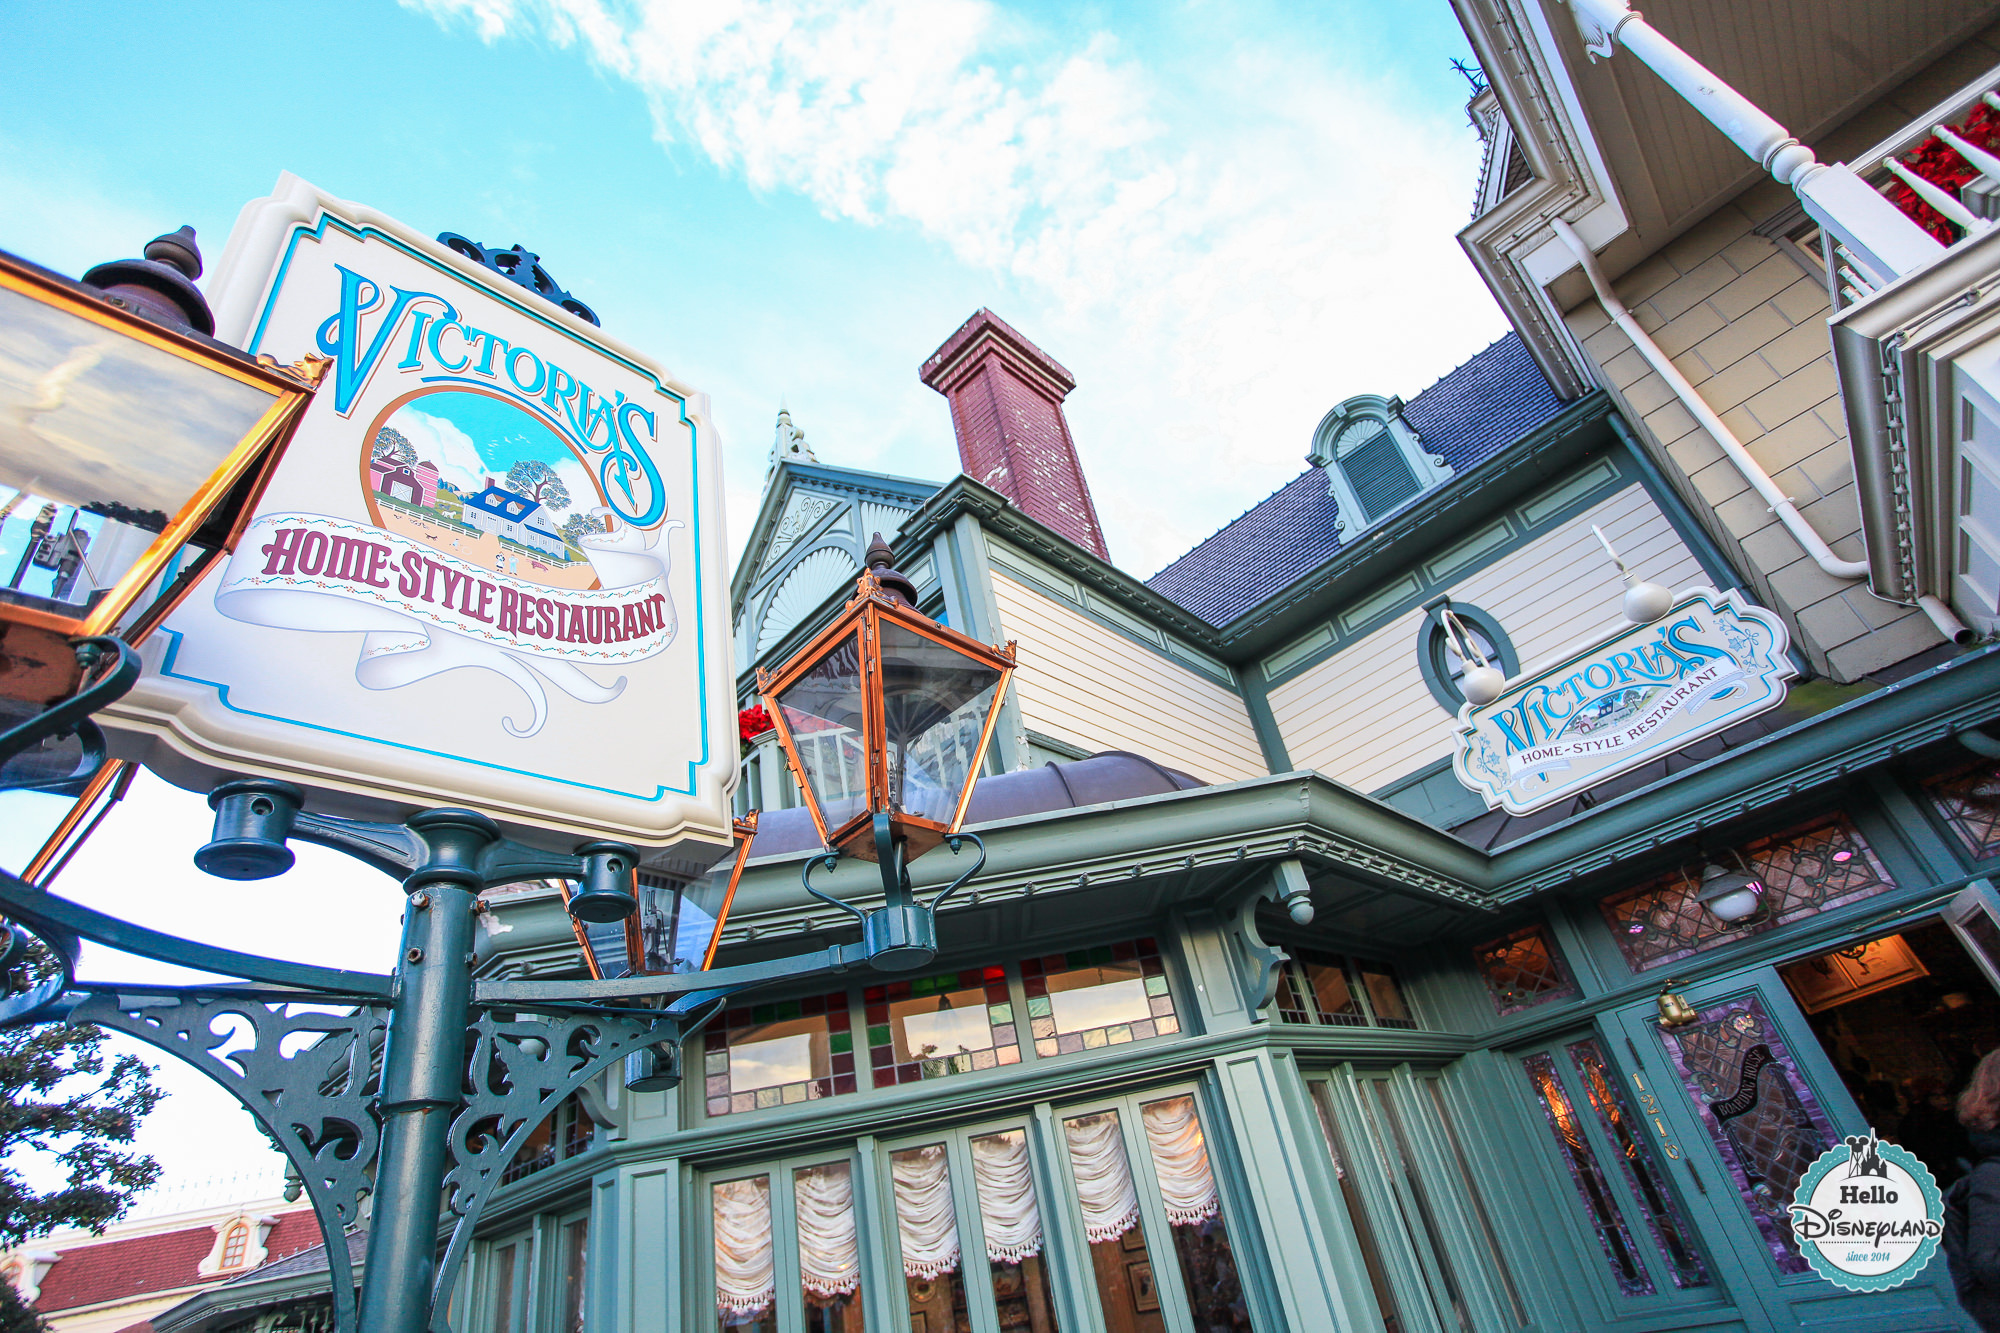 Victoria's Home Style Restaurant - Les 15 meilleurs restaurants de Disneyland Paris